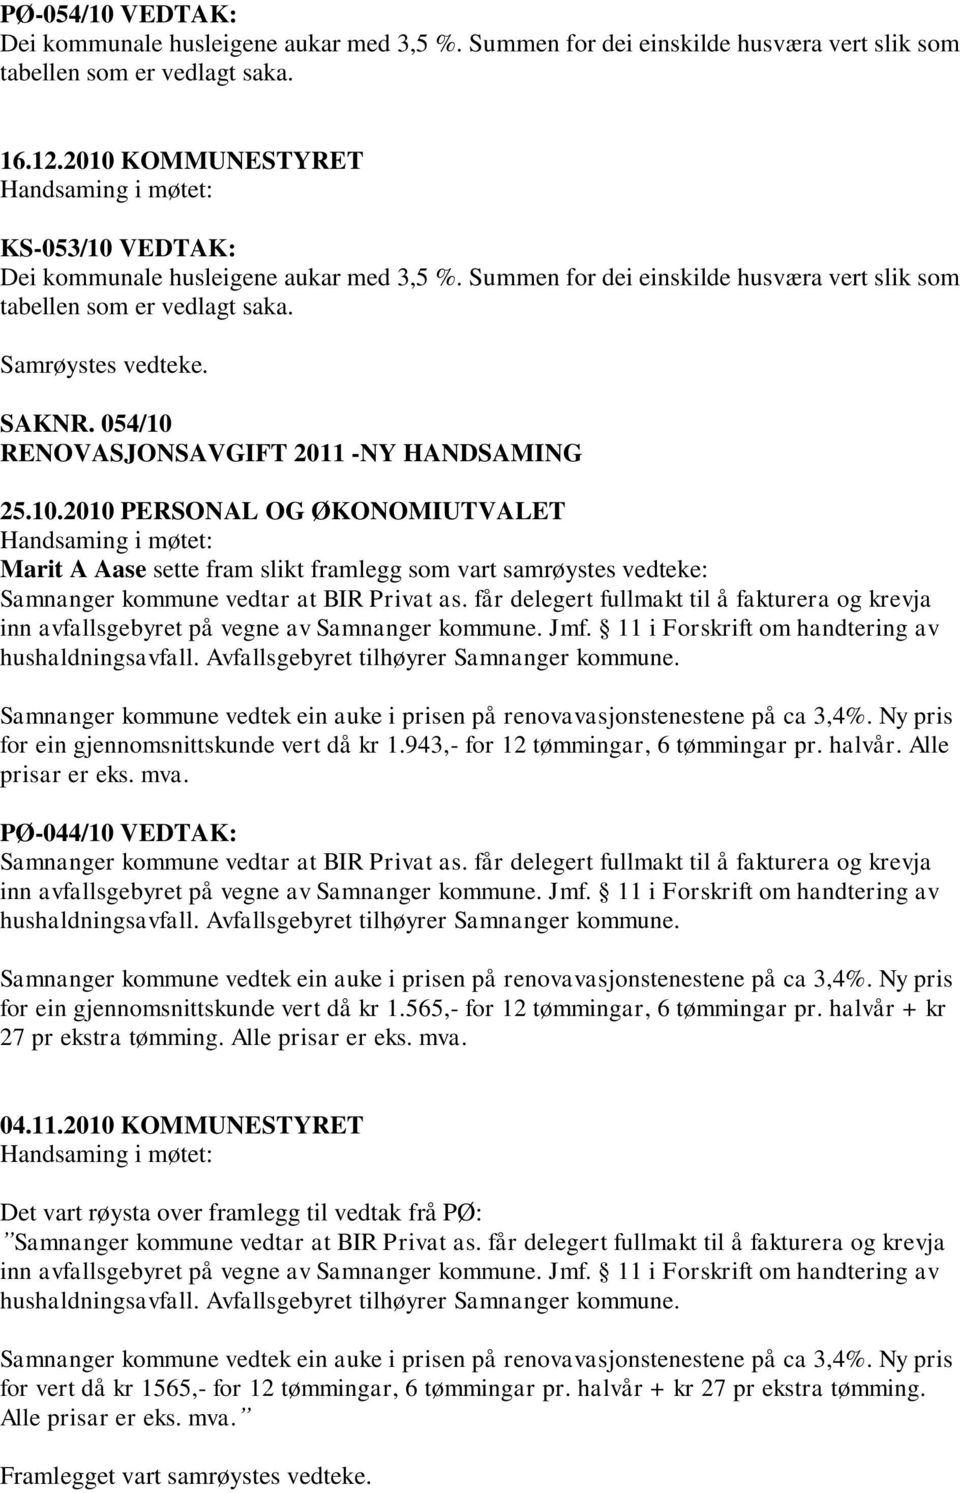 054/10 RENOVASJONSAVGIFT NY HANDSAMING 25.10.2010 PERSONAL OG ØKONOMIUTVALET Marit A Aase sette fram slikt framlegg som vart samrøystes vedteke: Samnanger kommune vedtar at BIR Privat as.